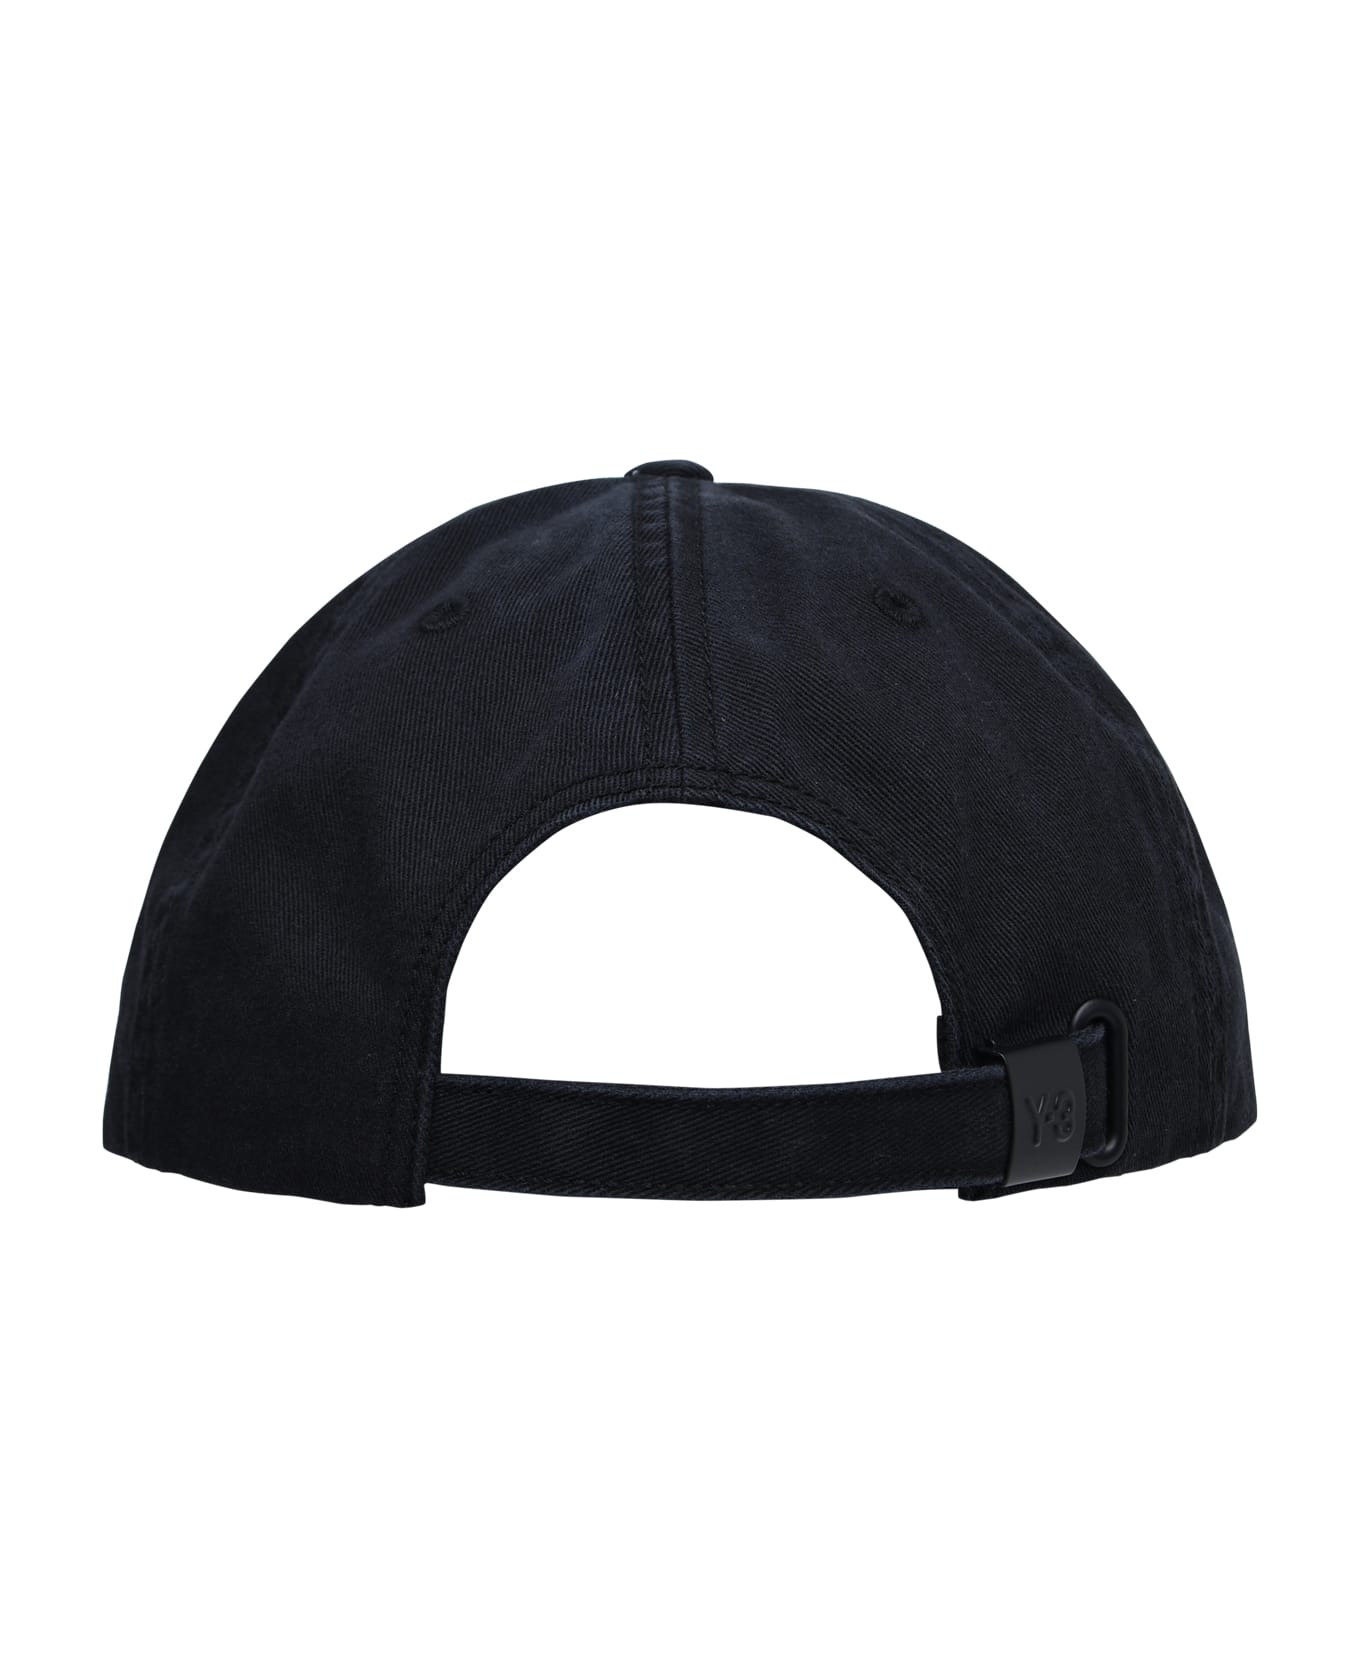 Y-3 'dad' Black Cotton Hat - Black 帽子